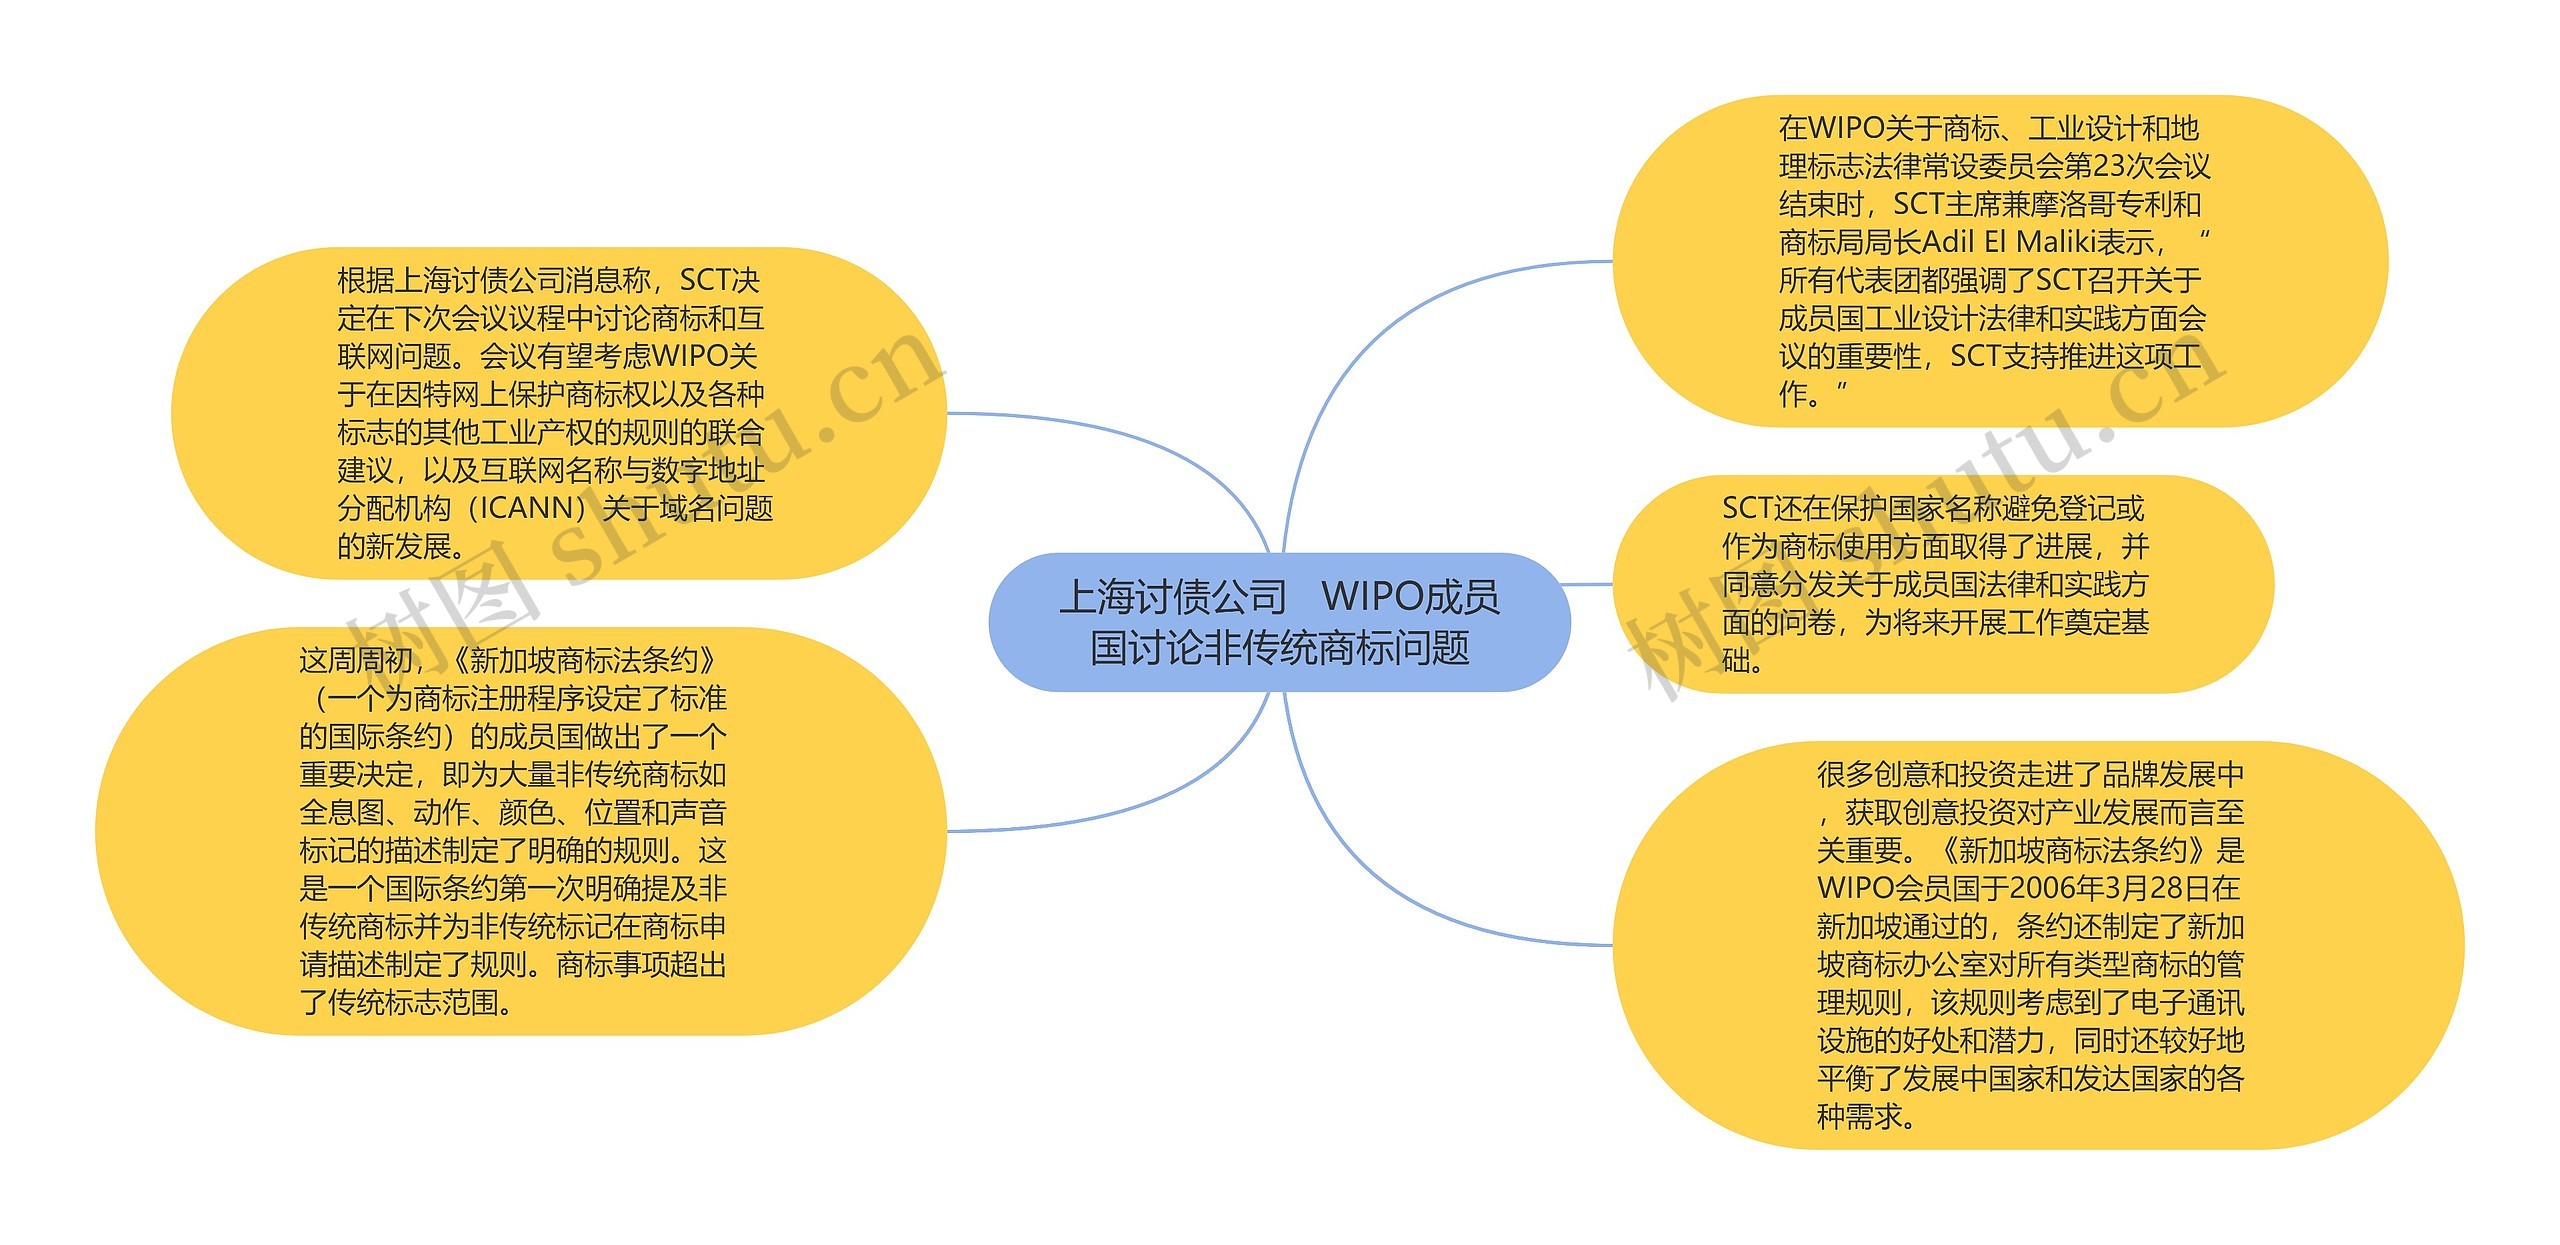 上海讨债公司   WIPO成员国讨论非传统商标问题